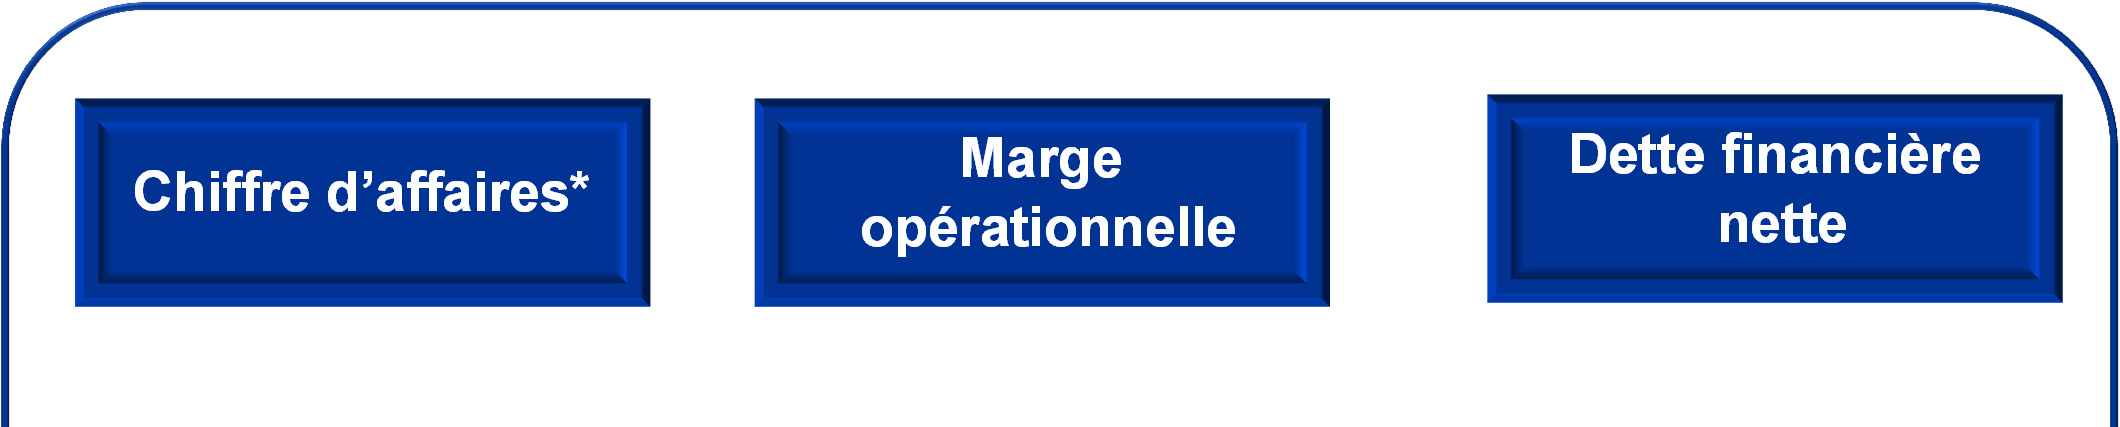 Nos Objectifs 2016 Chiffre d affaires* Marge opérationnelle Dette financière nette > 2Md 8% <150M o Levier Ebitda < 1x o